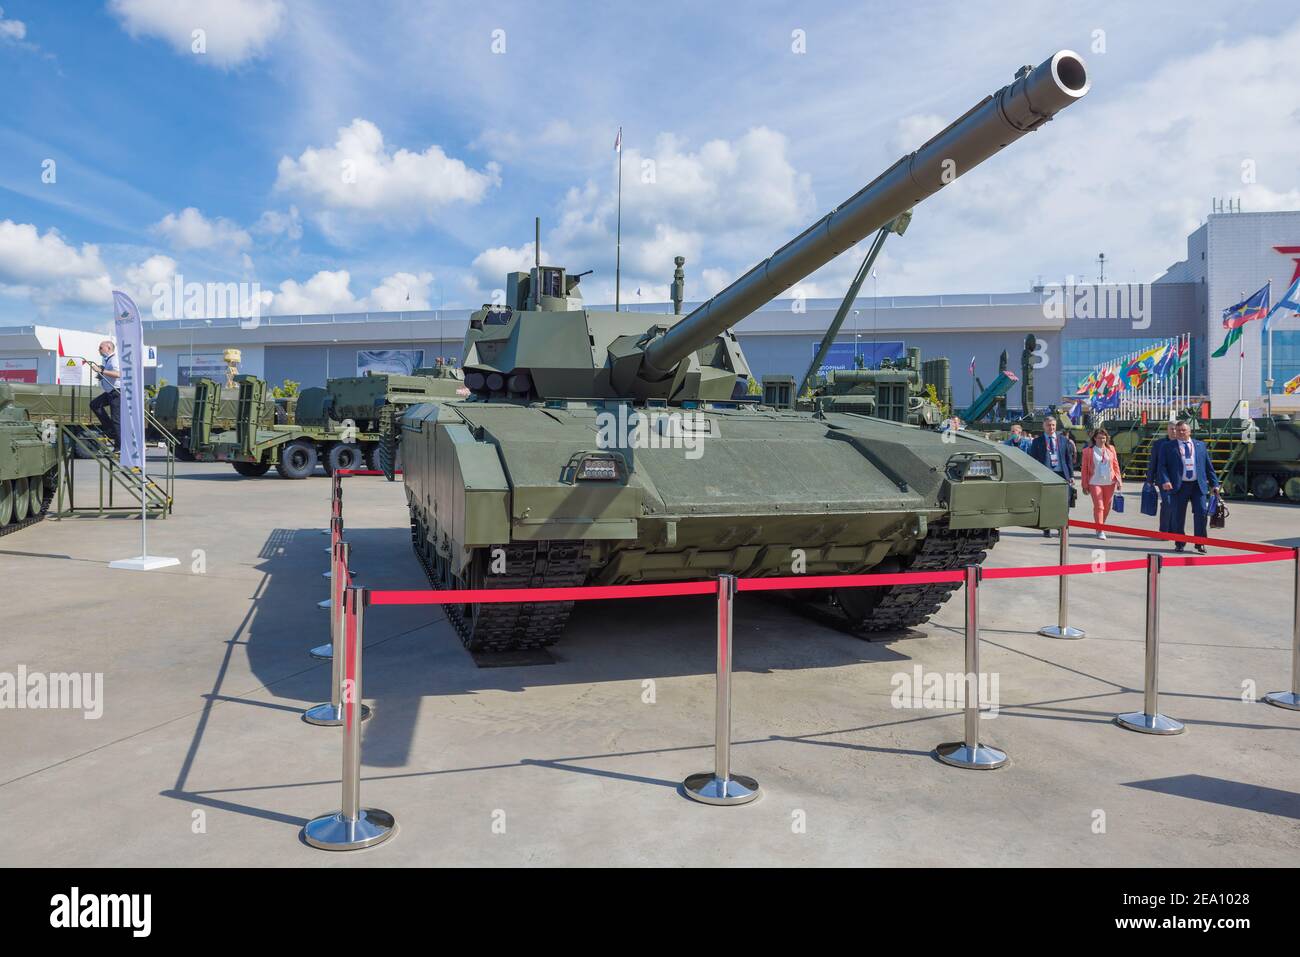 REGIÓN DE MOSCÚ, RUSIA - 25 DE AGOSTO de 2020: El tanque Armata ruso más nuevo Т-14 en el foro militar internacional de 'Army-2020'. Parque Patriot Foto de stock